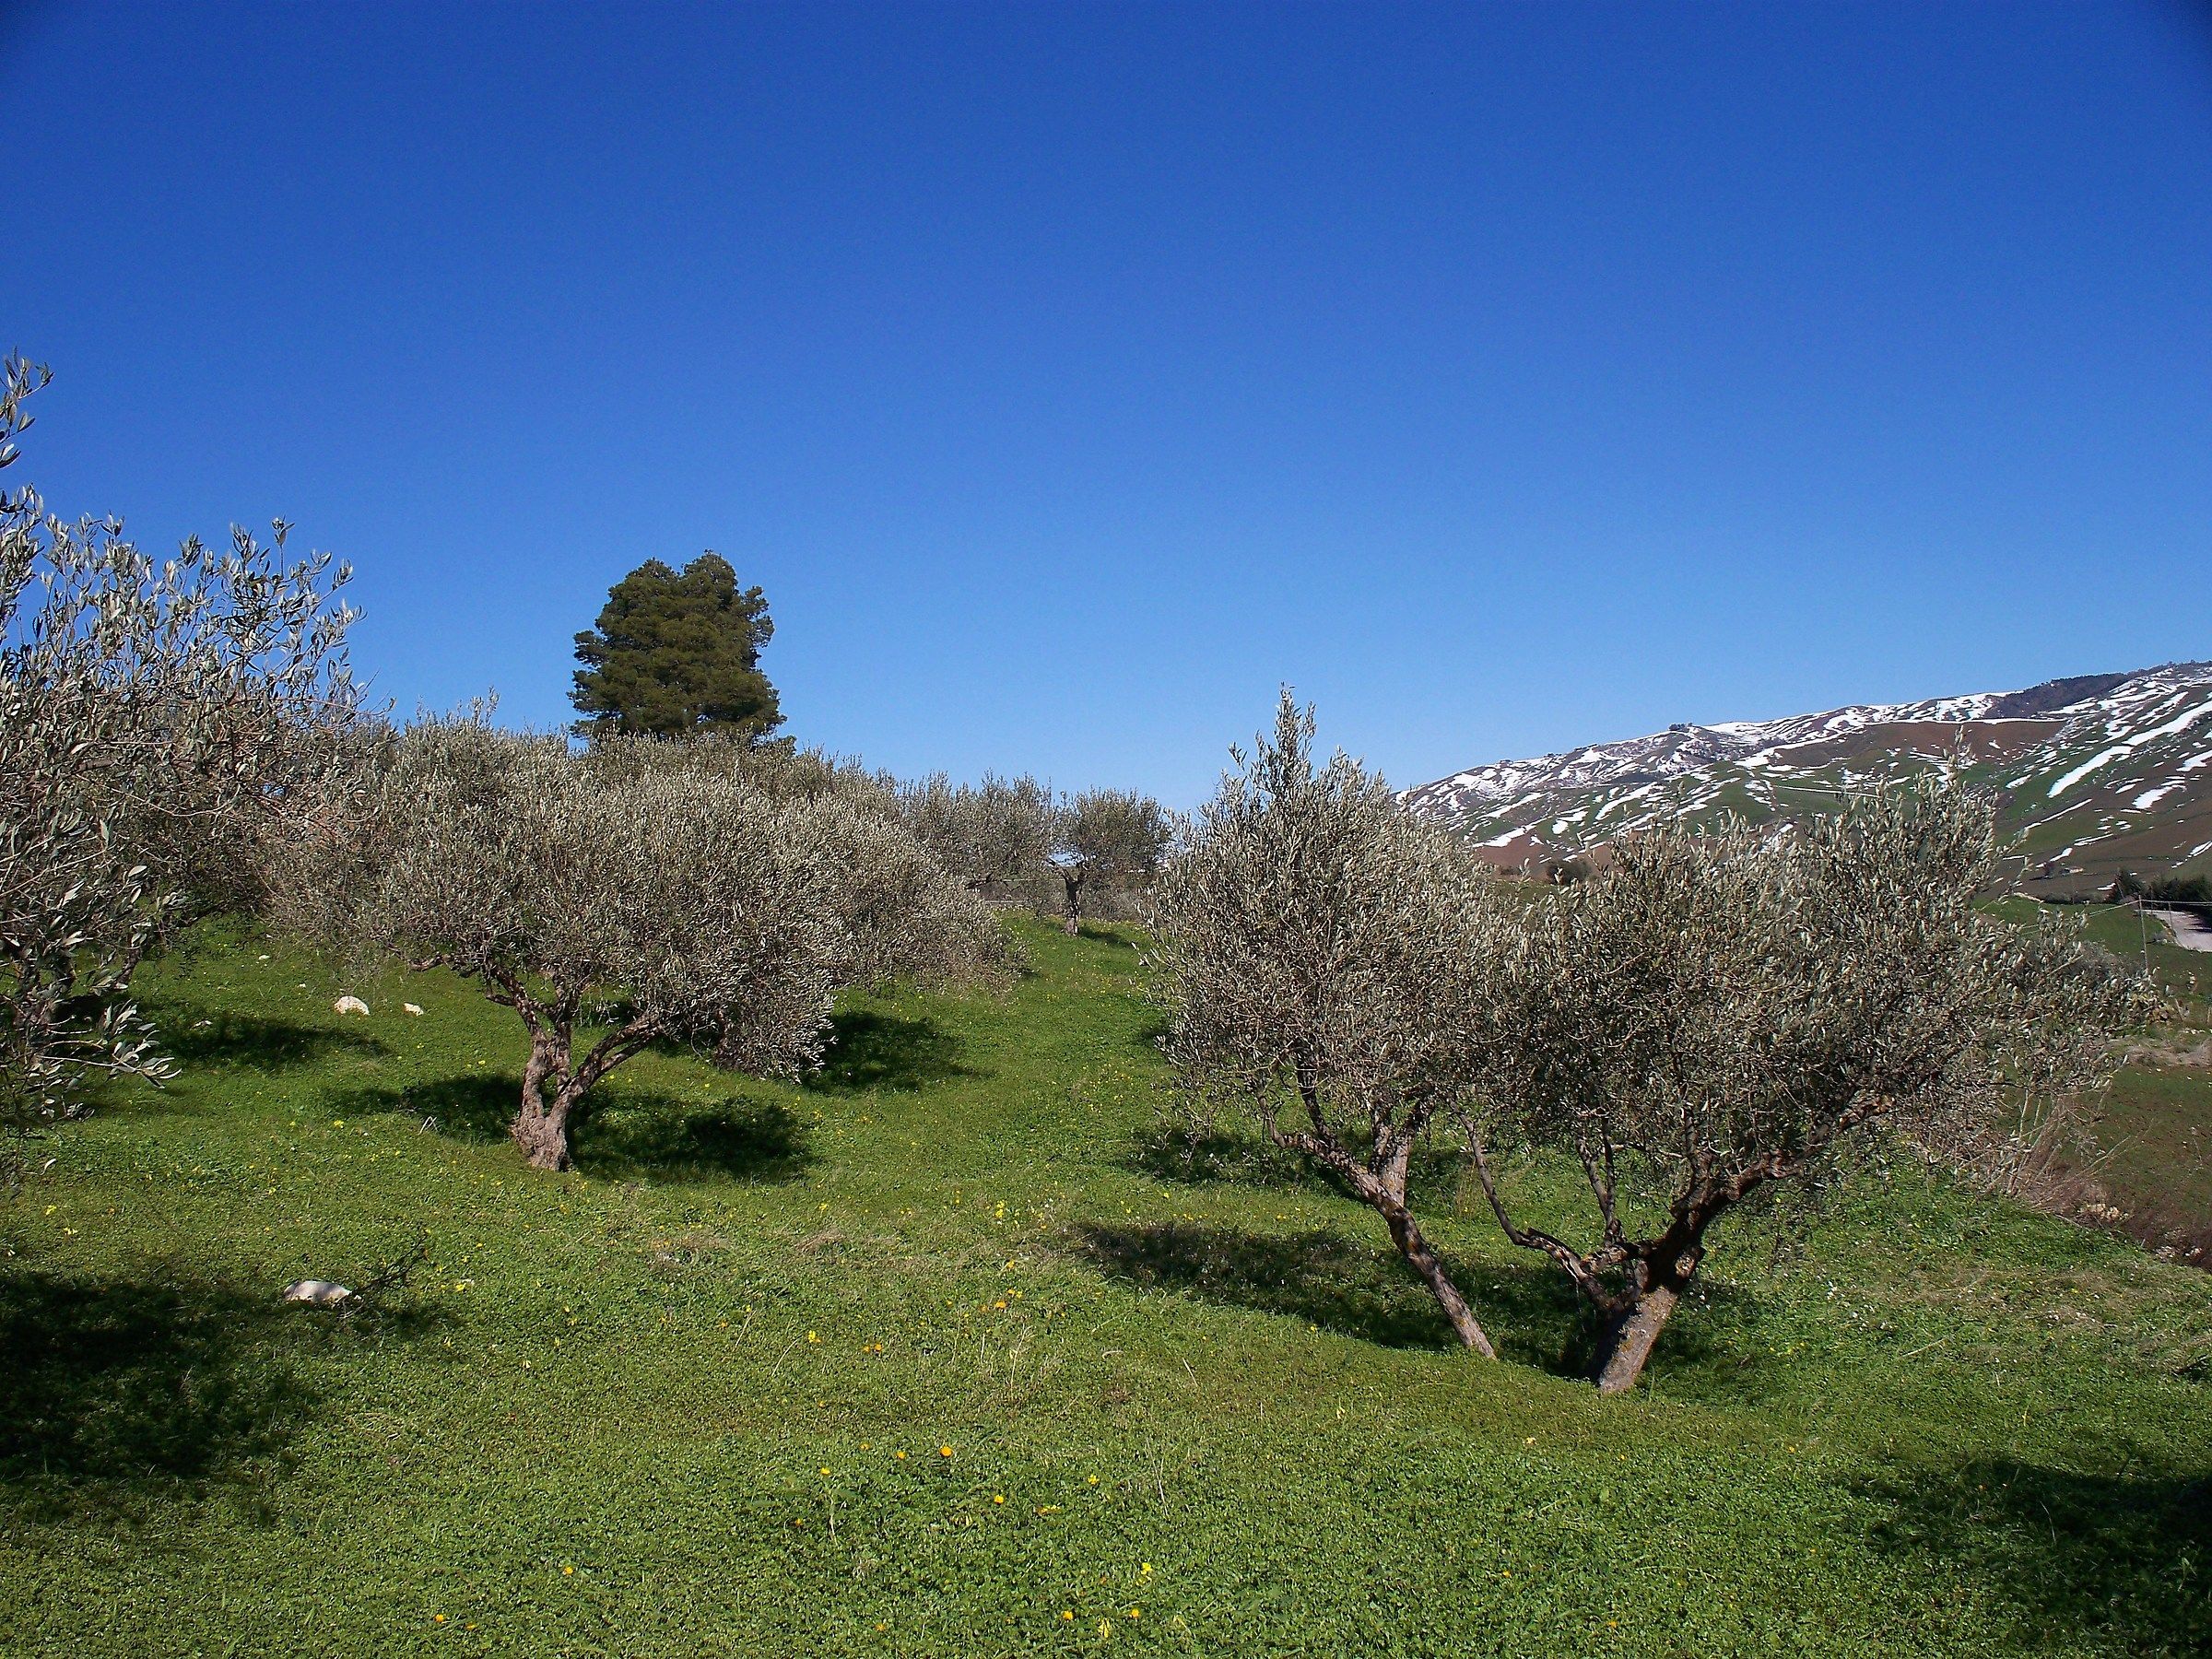 Olive trees...